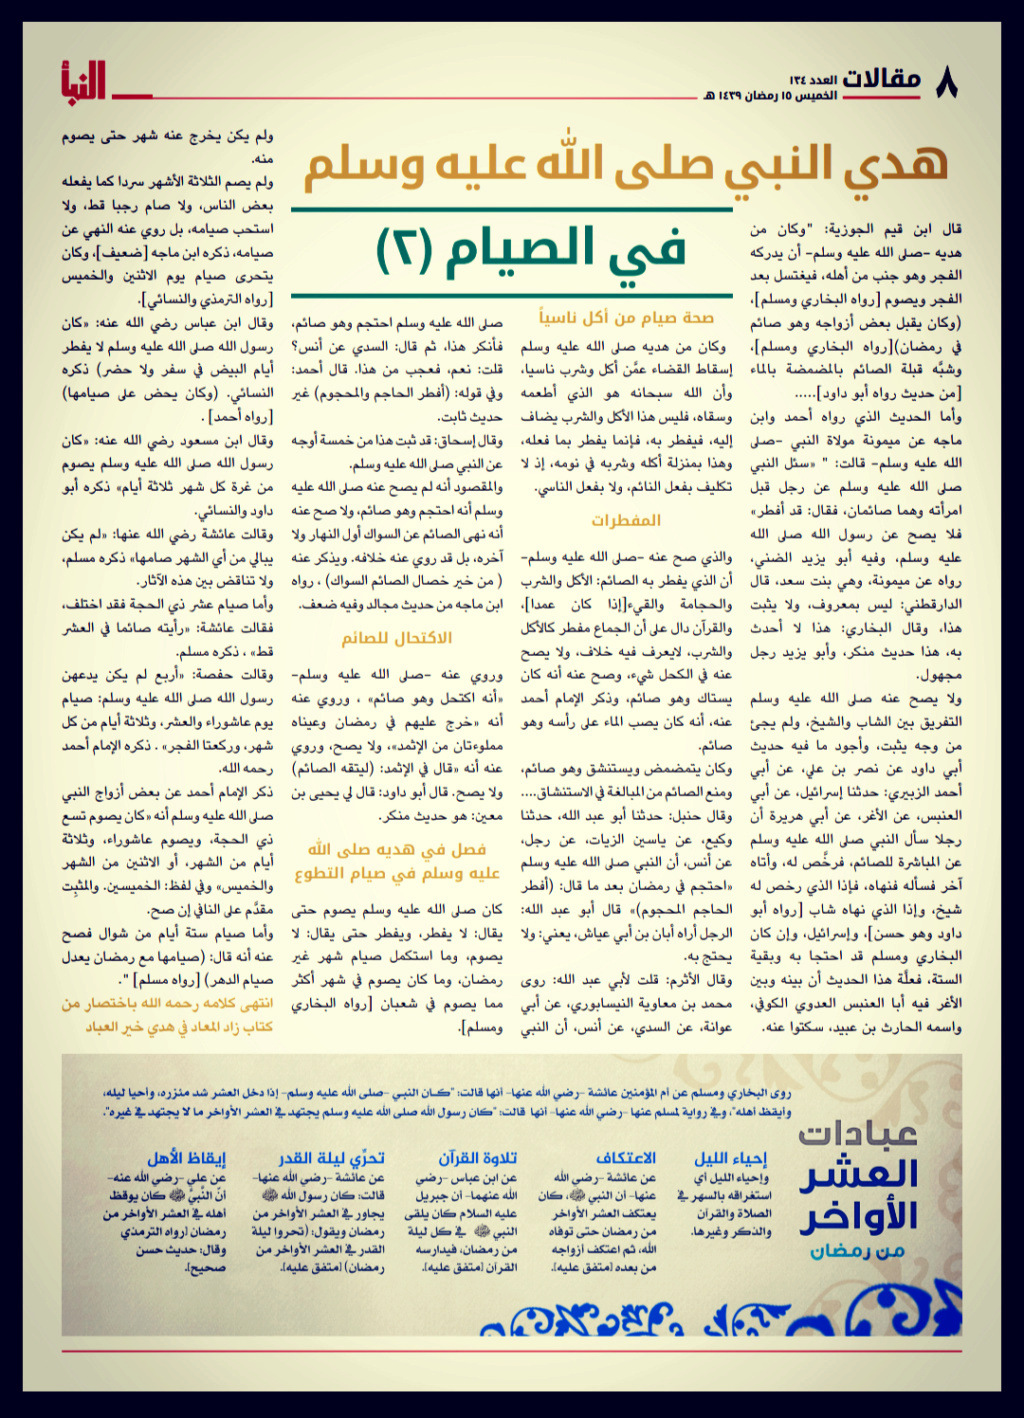 صحيفة النبأ - الاصدارات القديمة  - صفحة 2 0cc76610